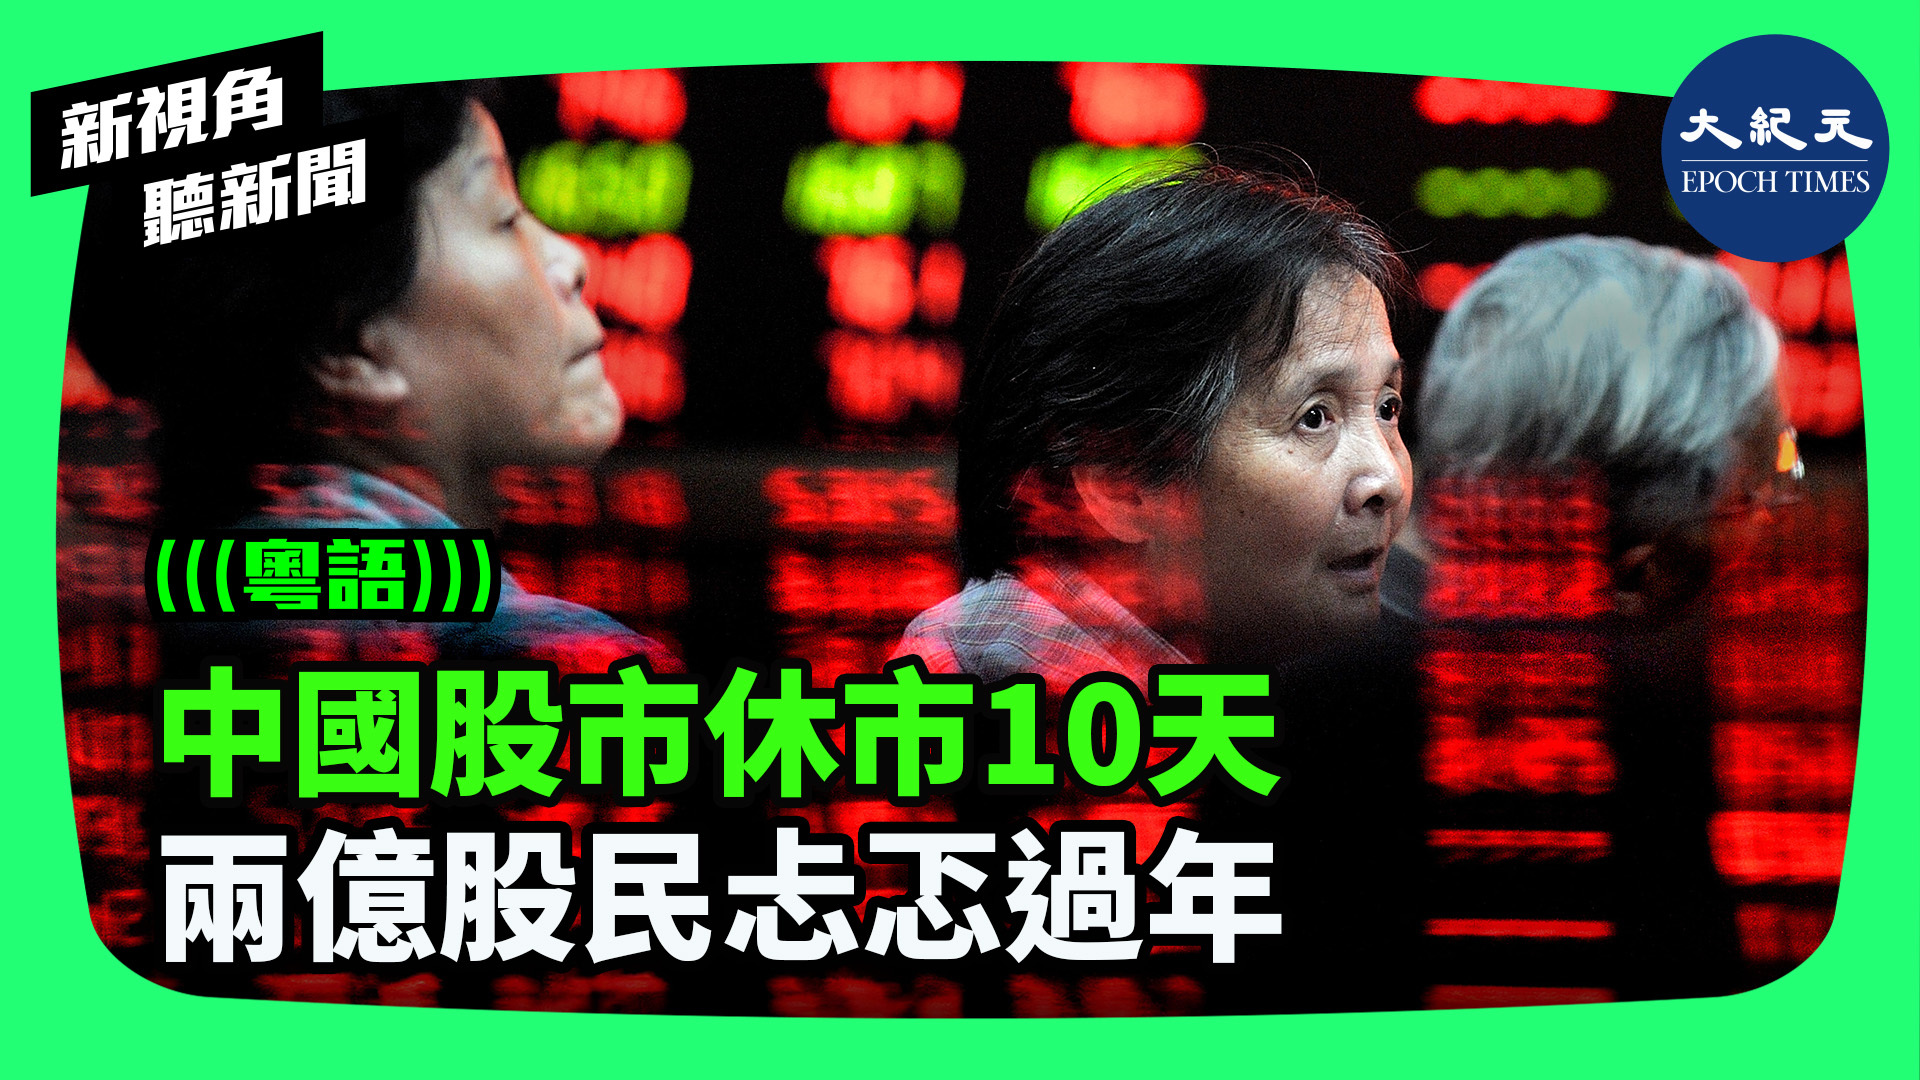 >中國股市休市10天 兩億股民忐忑過年